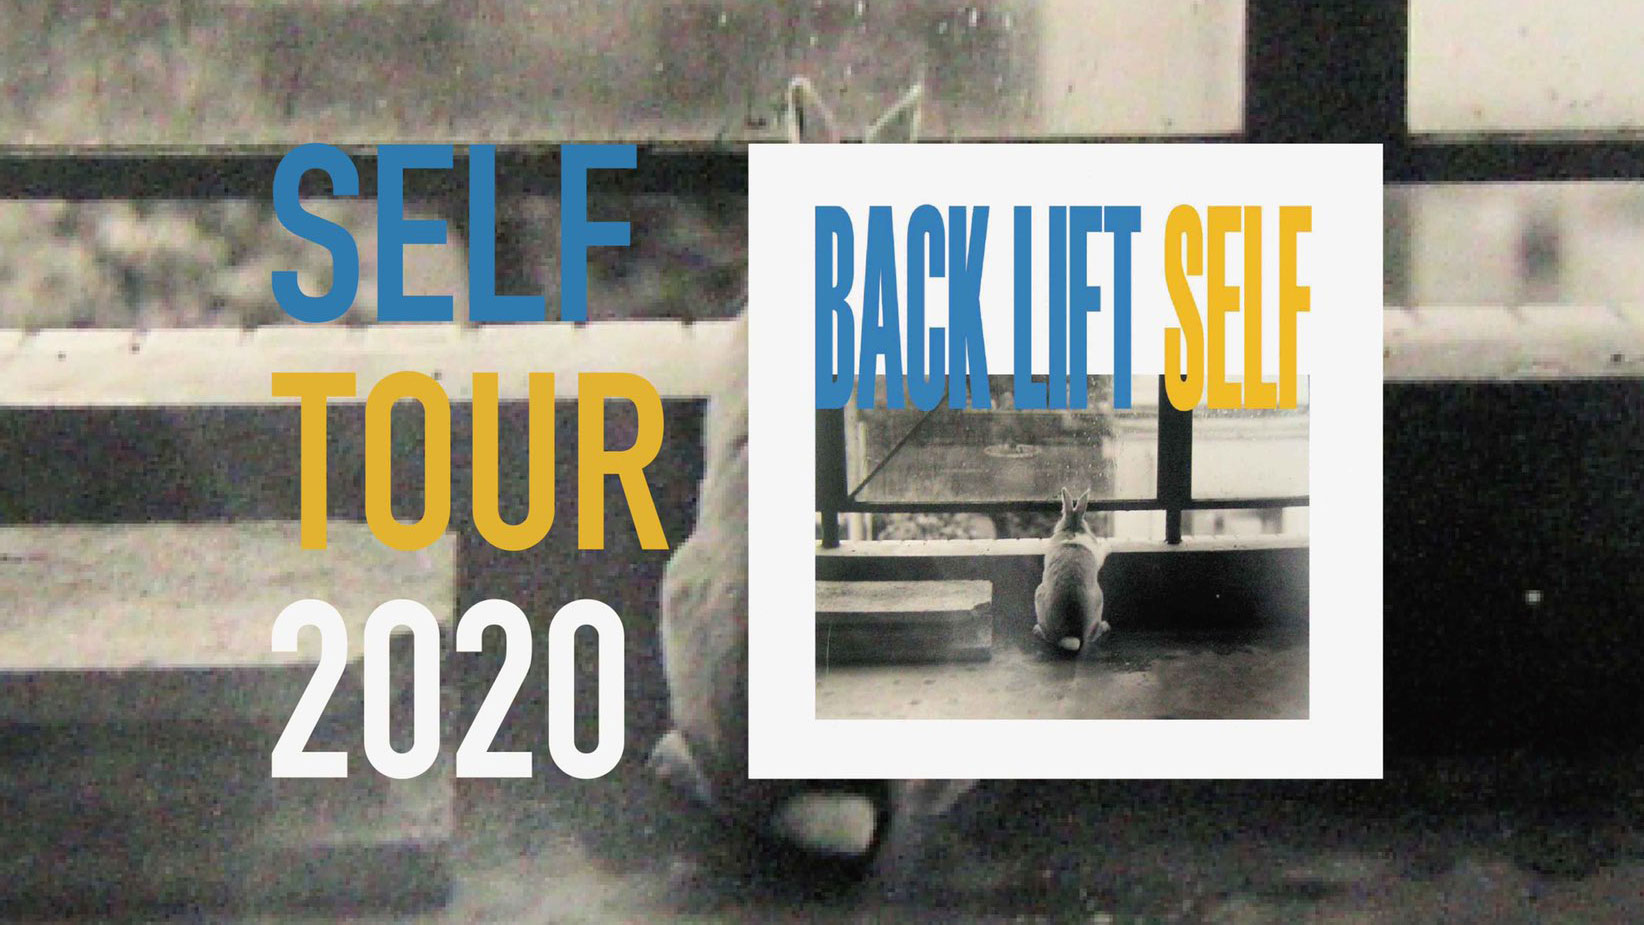 BACK LIFTアコースティックライブ "SELF TOUR 2020"